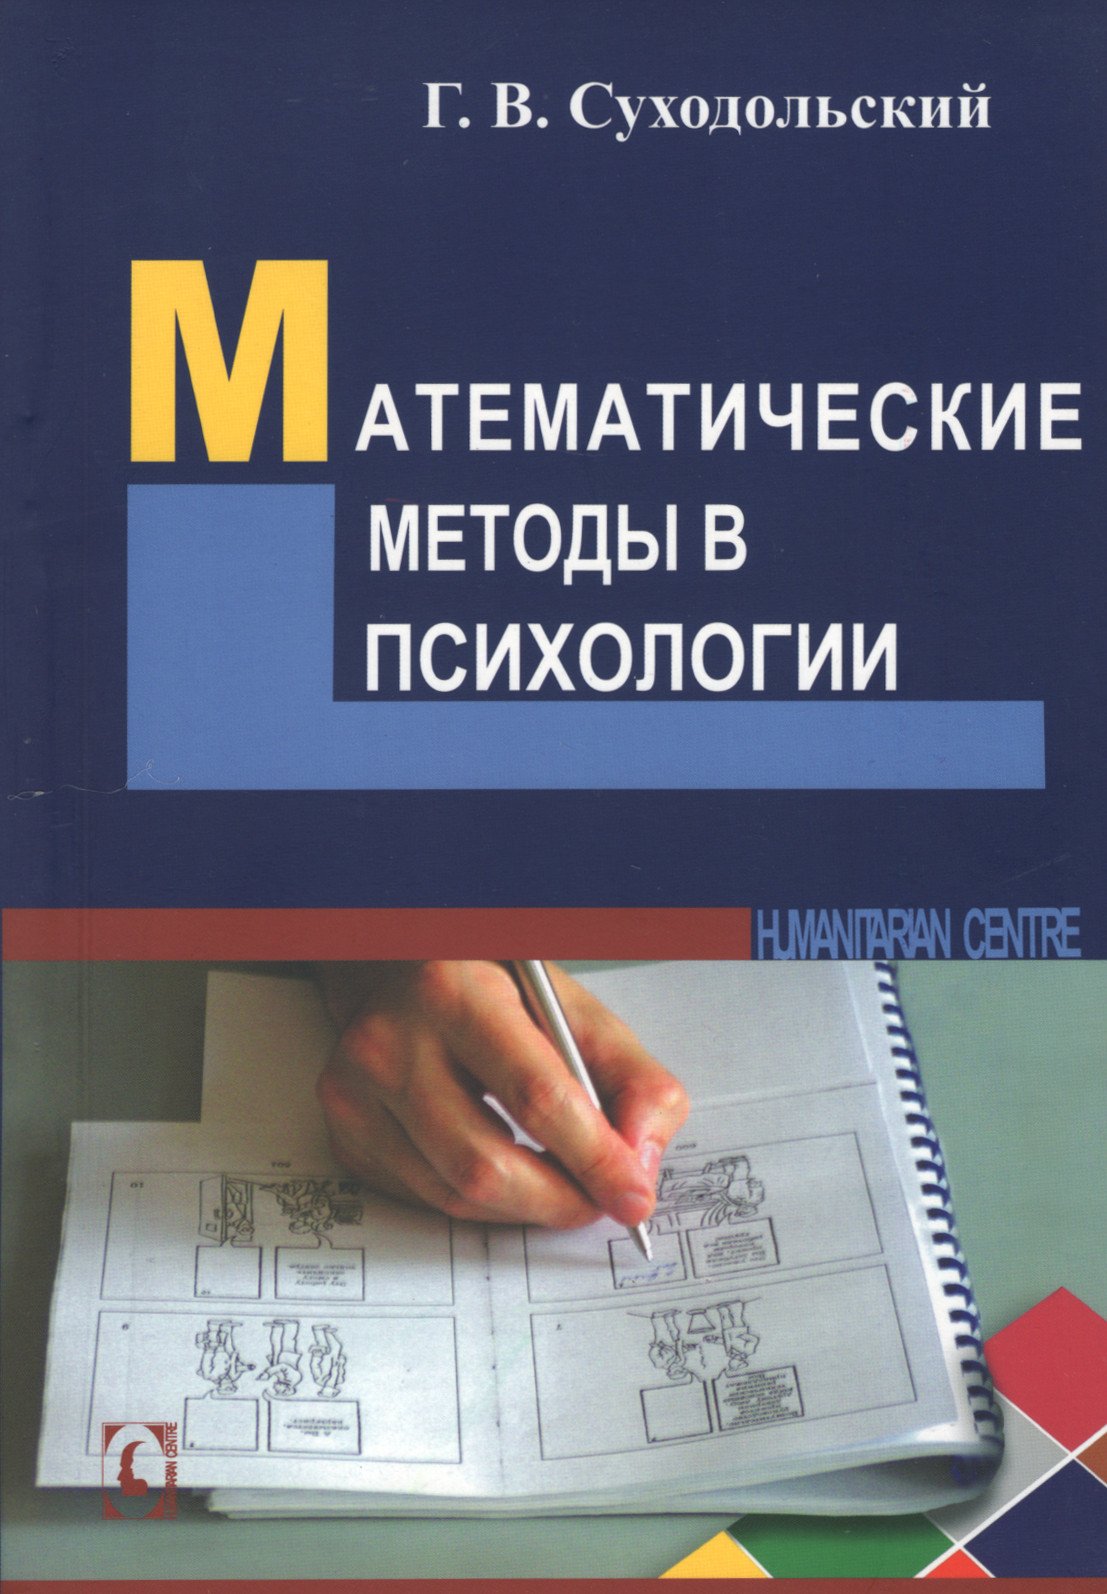 Купить книгу Математические методы в психологии в интернет-магазине Ариаварта